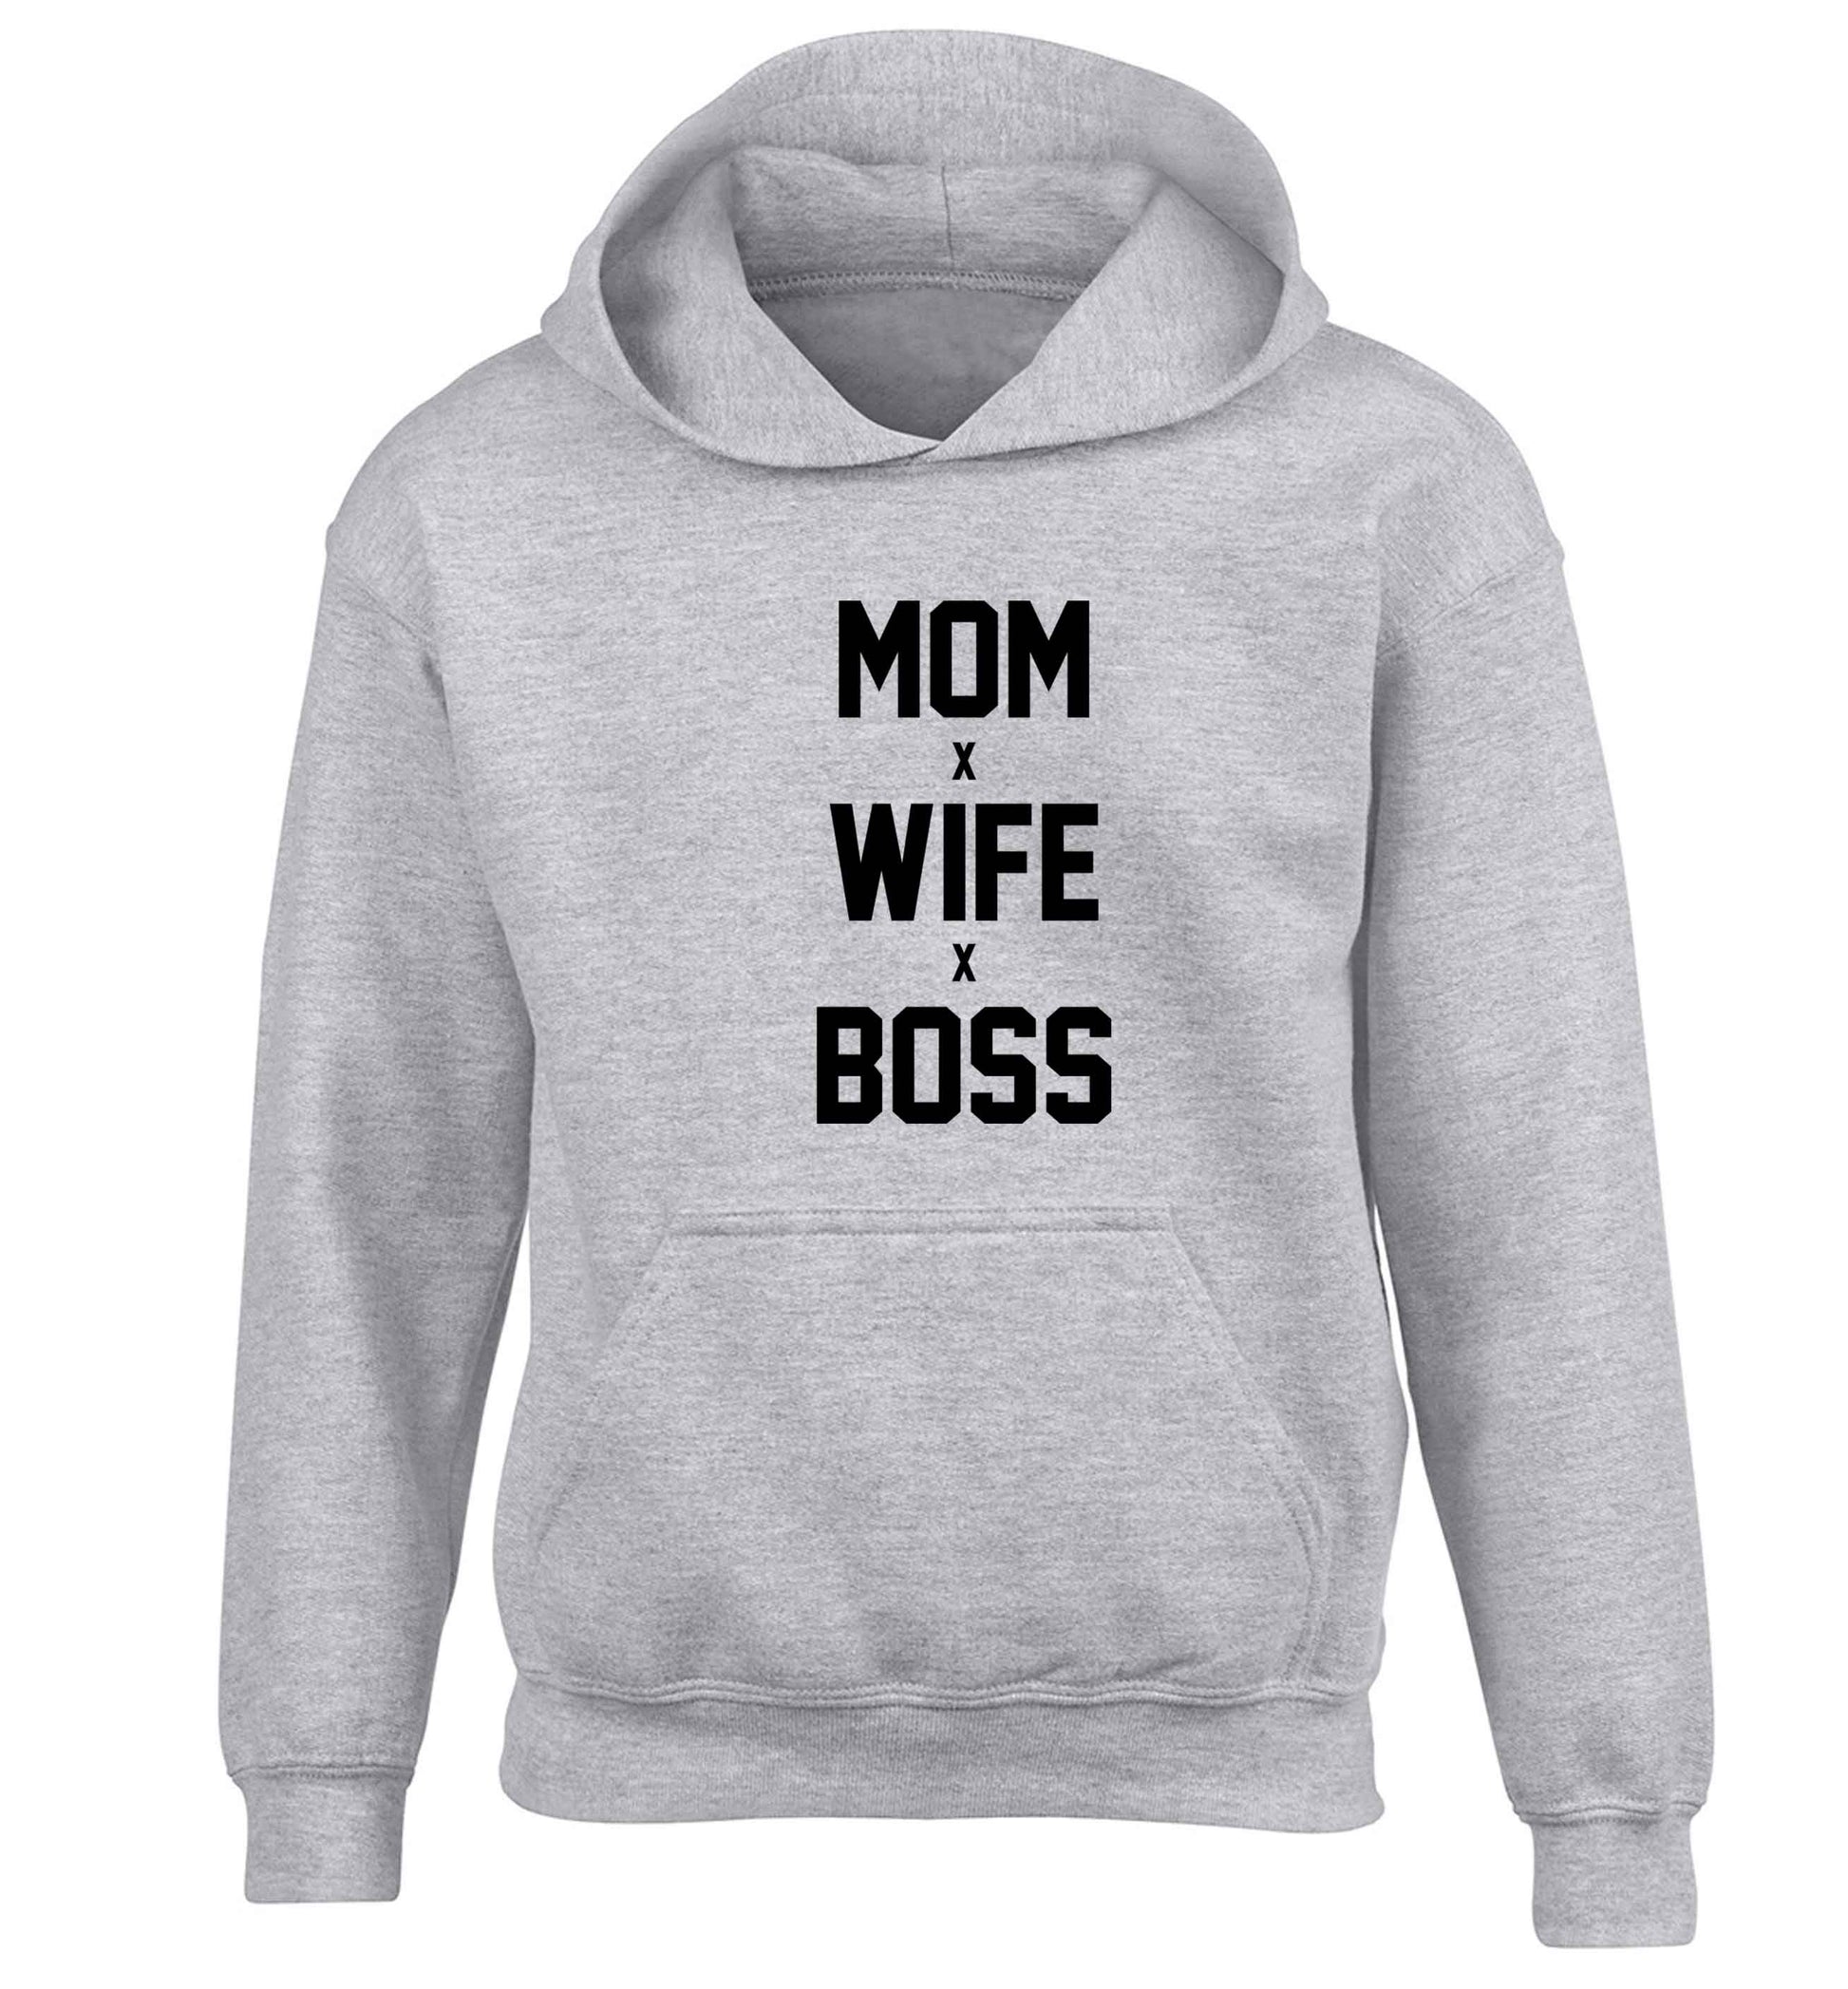 Mum wife boss children's grey hoodie 12-13 Years